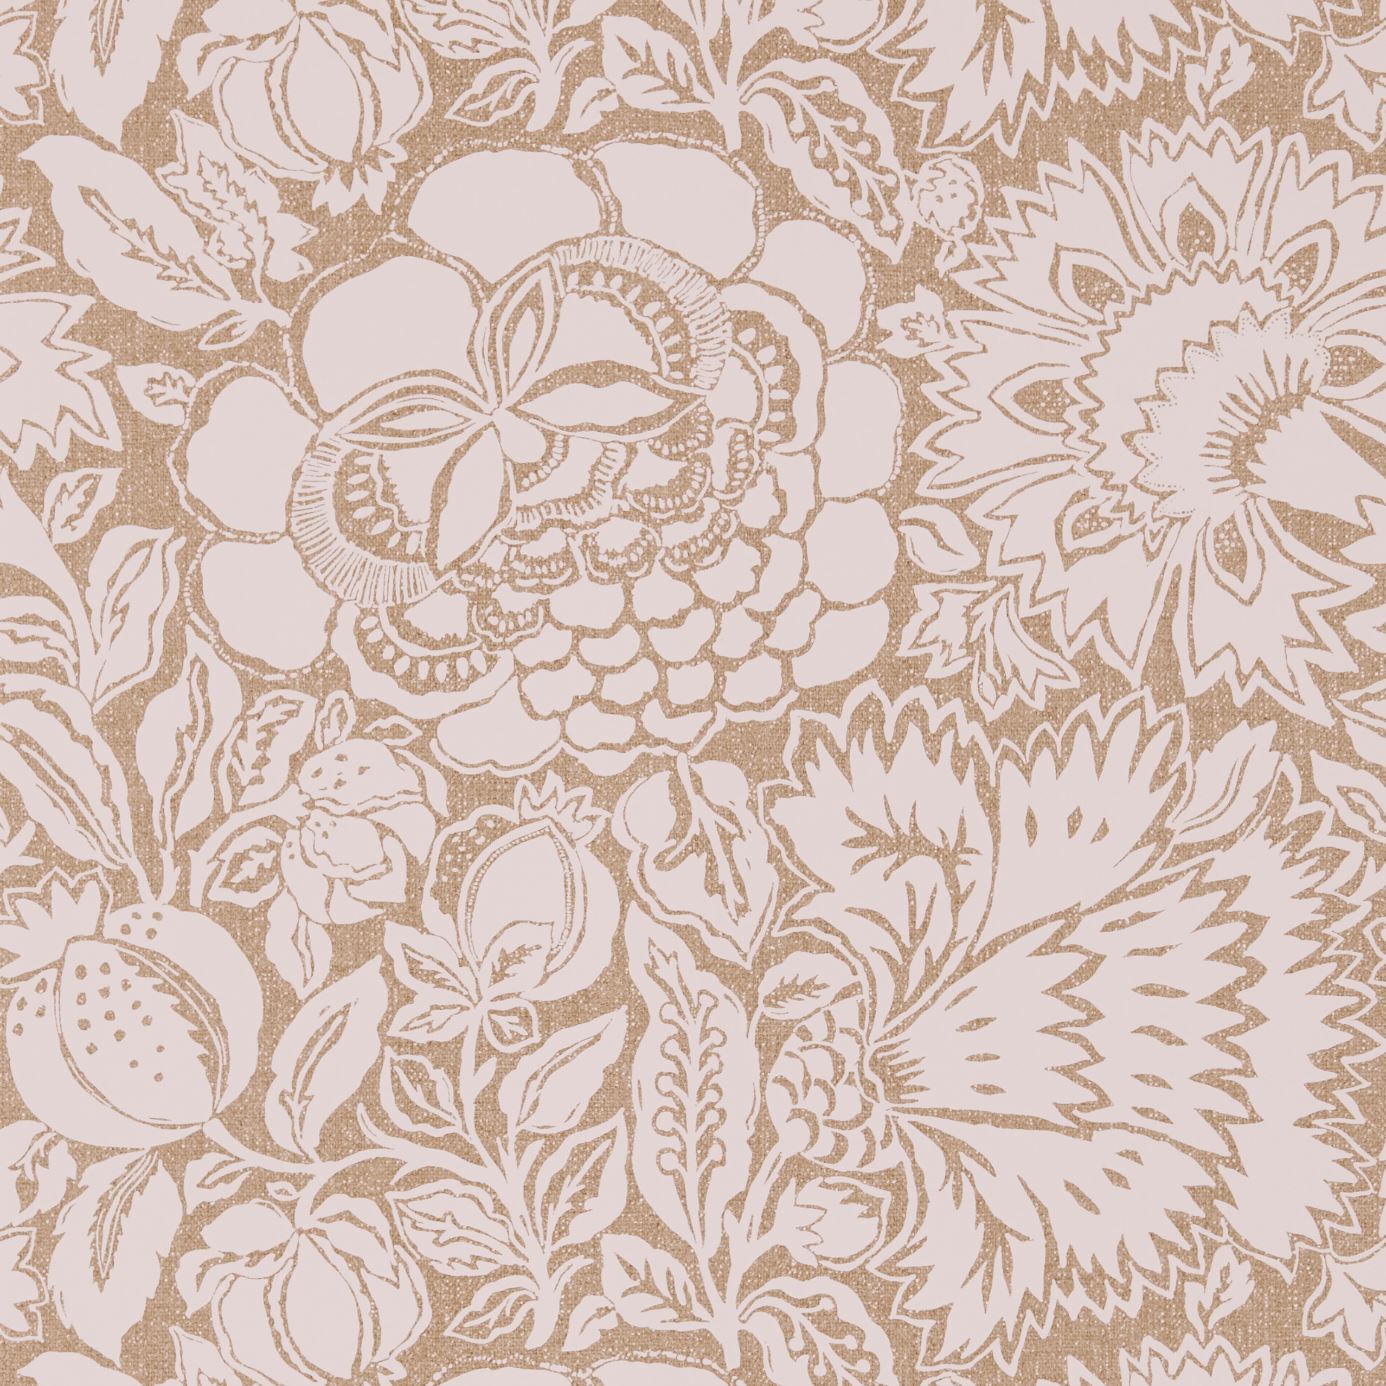 Wallpaper - Sanderson Sojourn Wallpaper Poppy Damask Linen/Natural